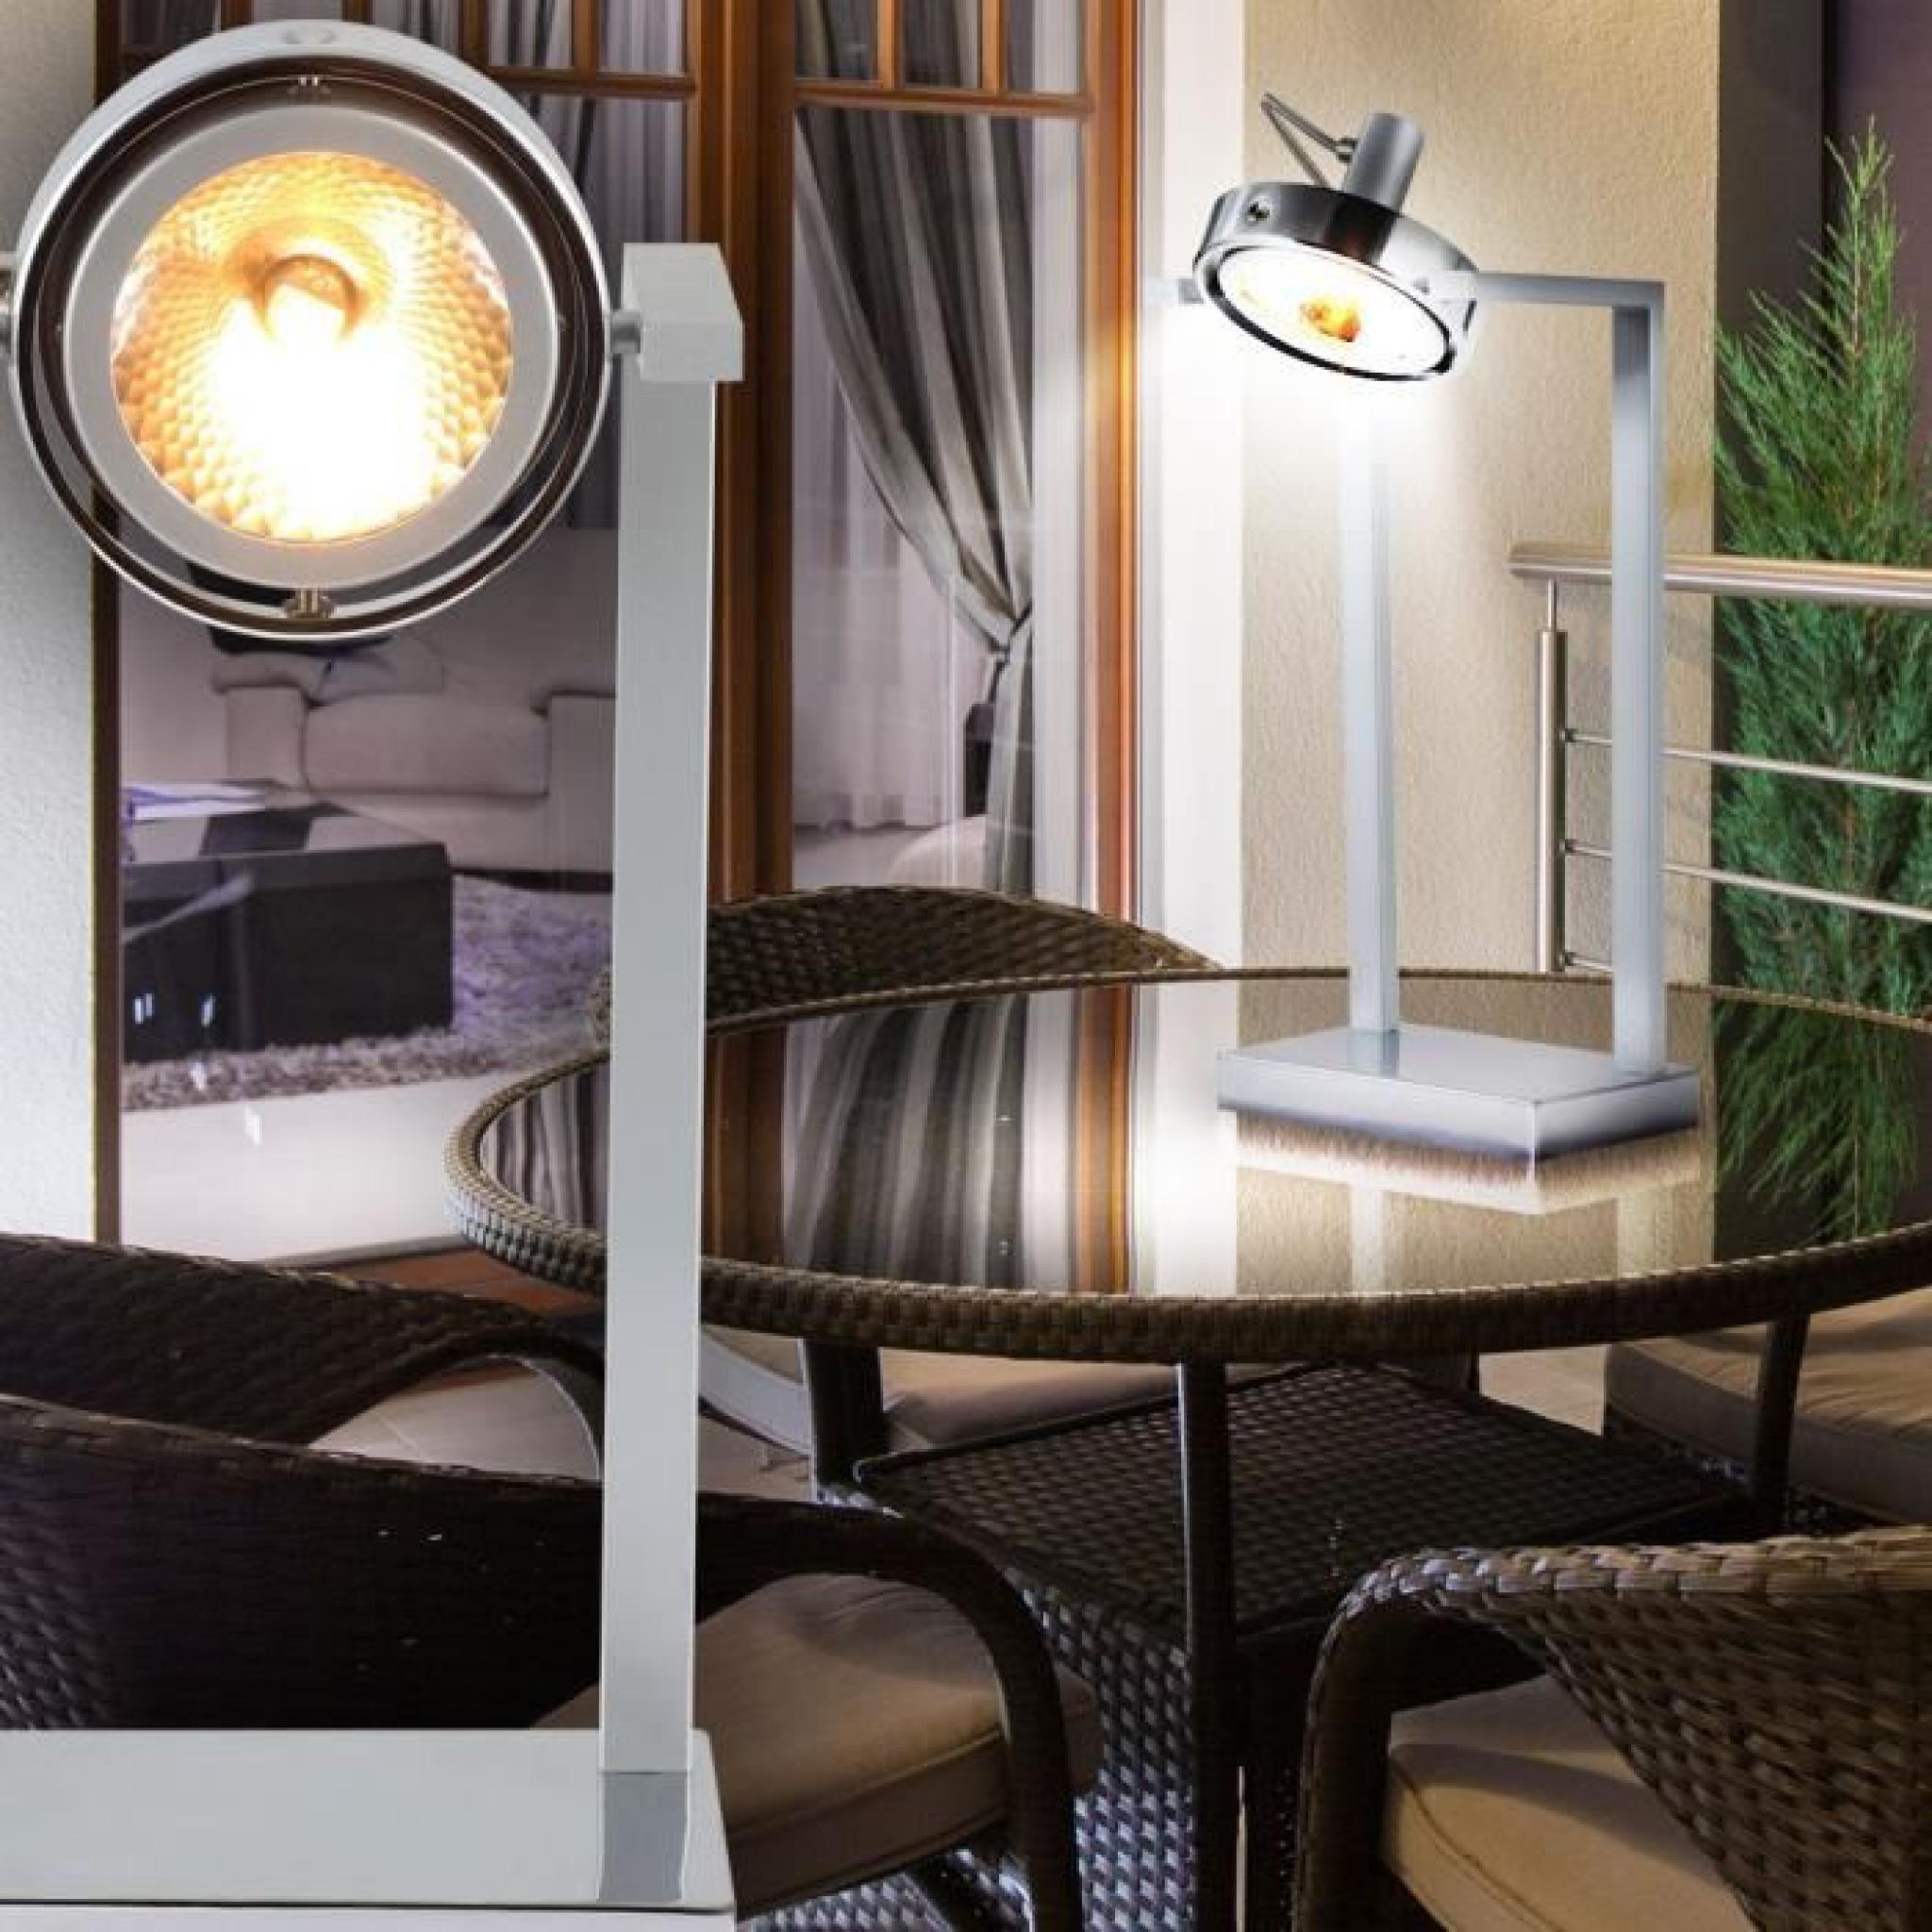 Lampe de table spot éclairage luminaire bureau salle de séjour chrome chambre pas cher